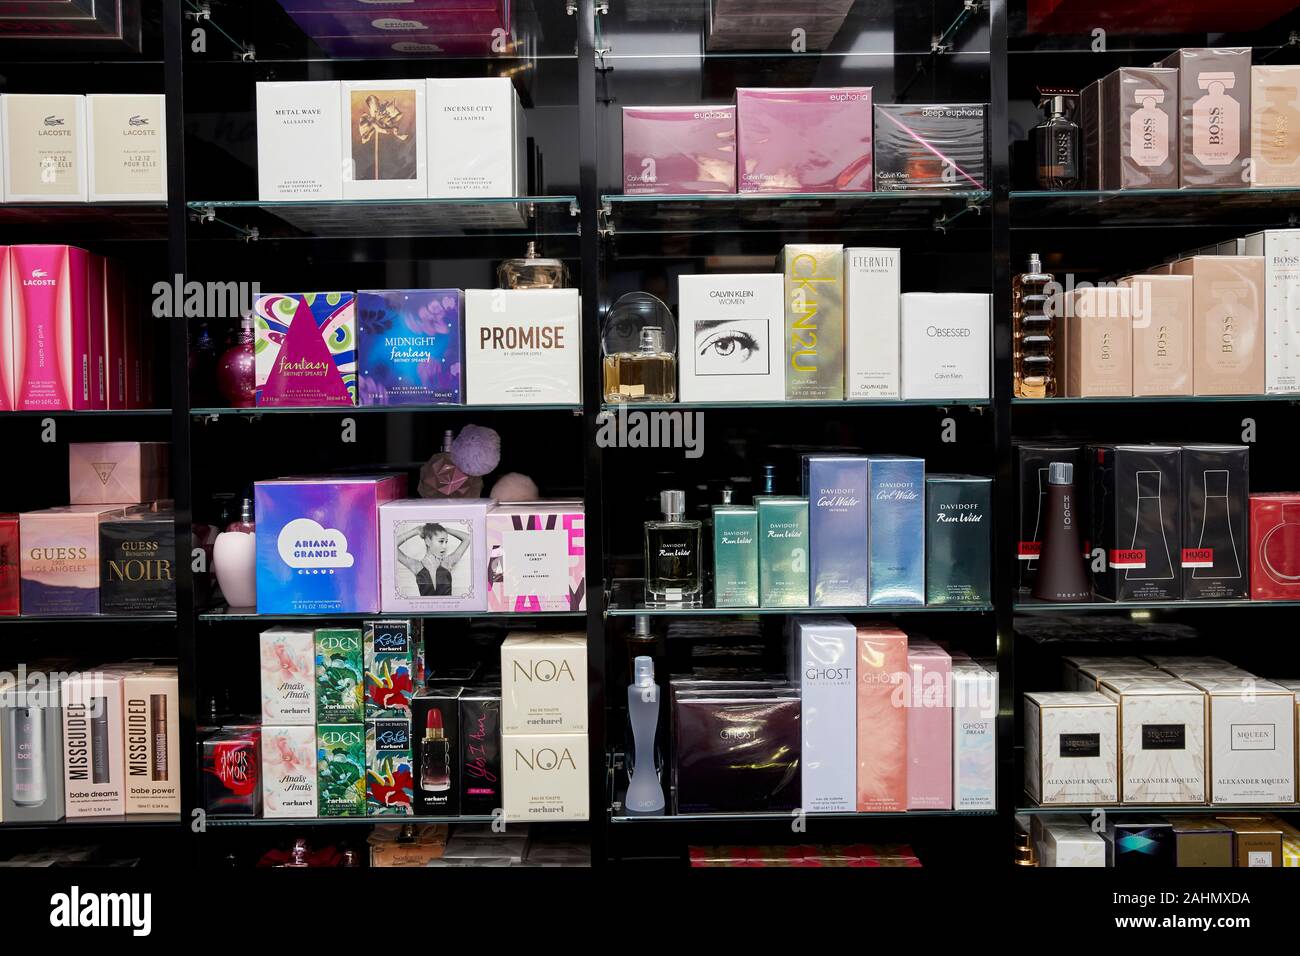 La fragranza si apre il negozio in uscita di Lowry a MediaCity, Salford Quays. Foto Stock